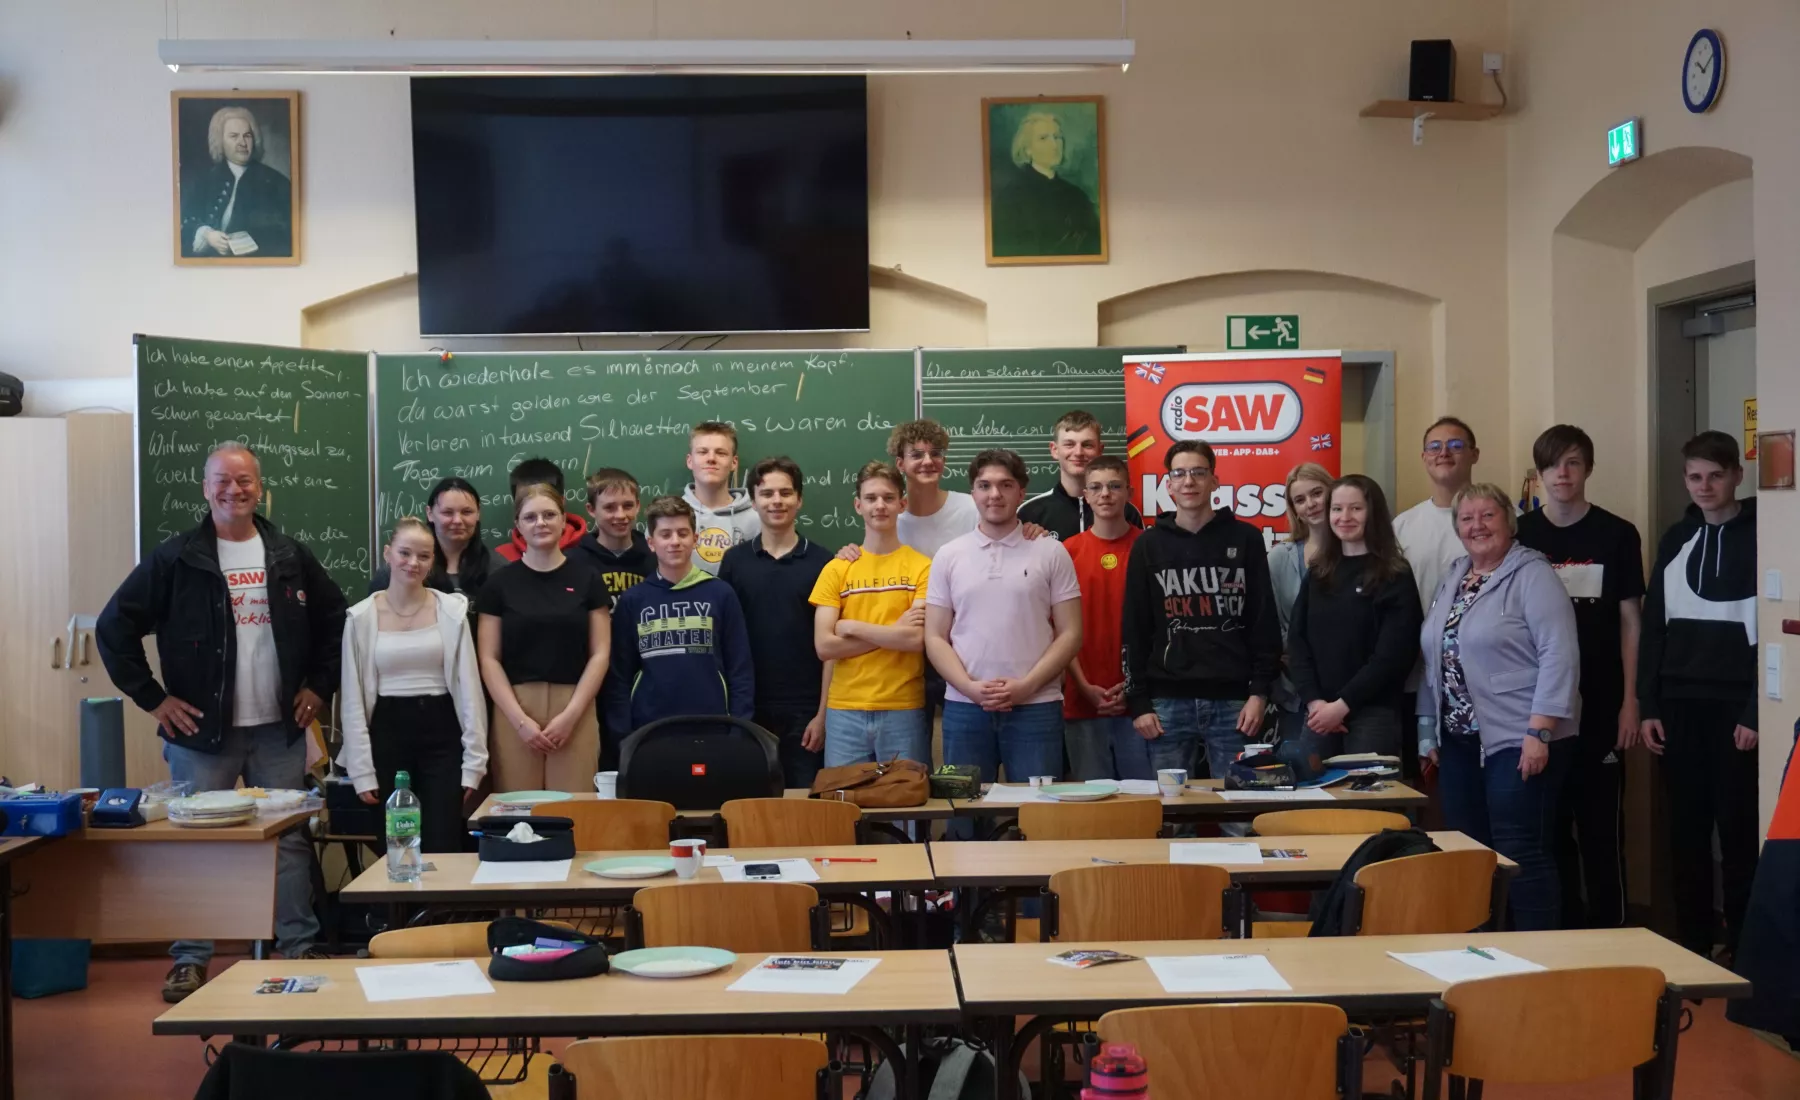 Klasse übersetzt in Wernigerode